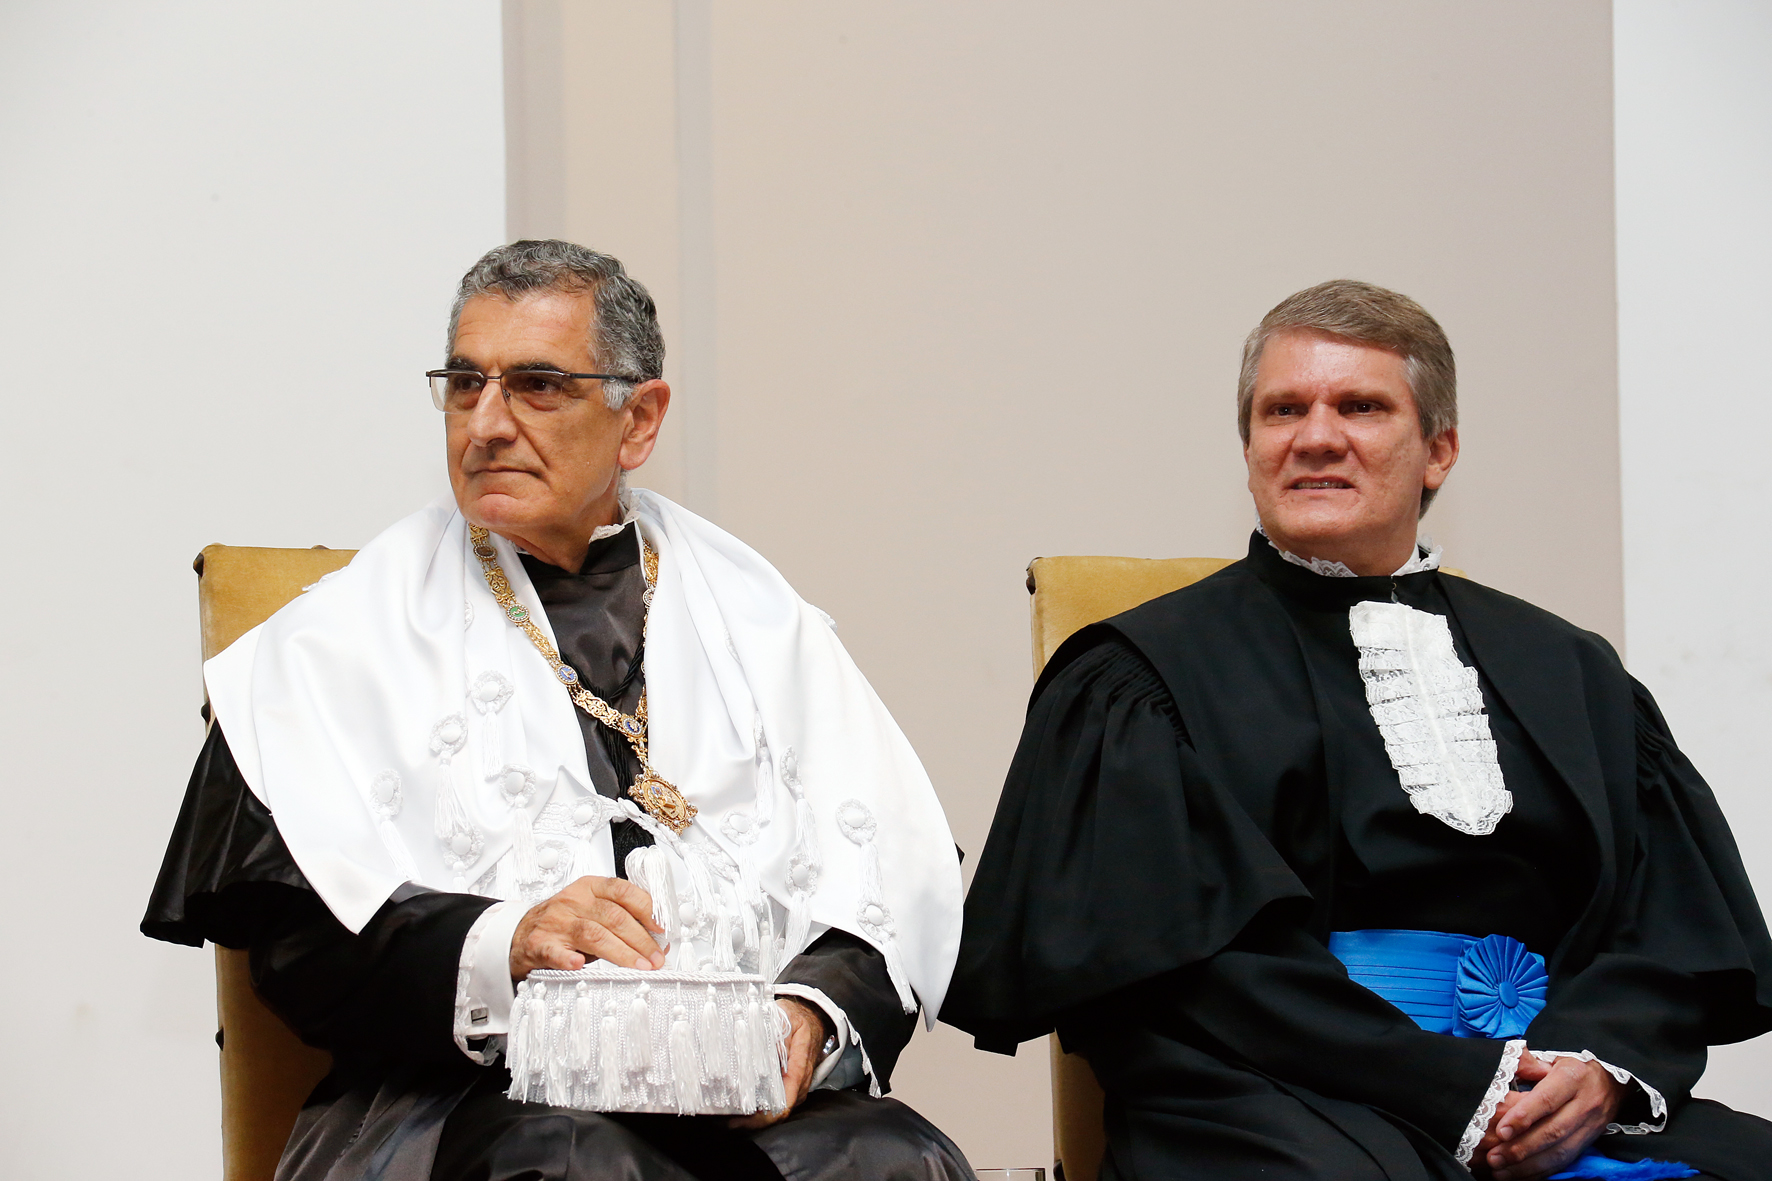 The new Rector, Vahan Agopyan, and Deputy Rector, Antonio Carlos Hernandes